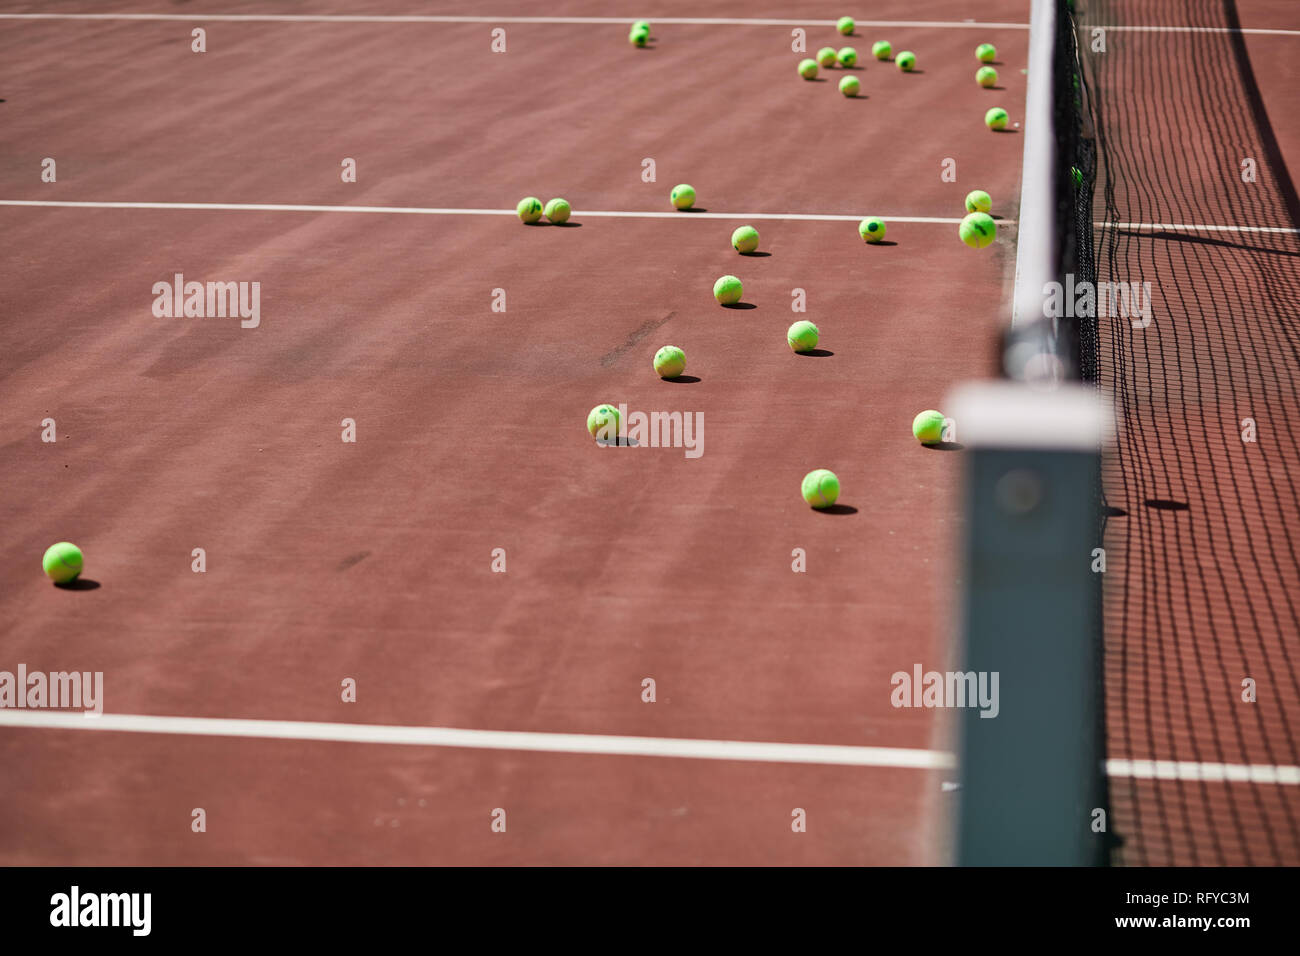 Campi da tennis in terra rossa, attrezzature sportive e le palline da tennis su di esso. Foto Stock